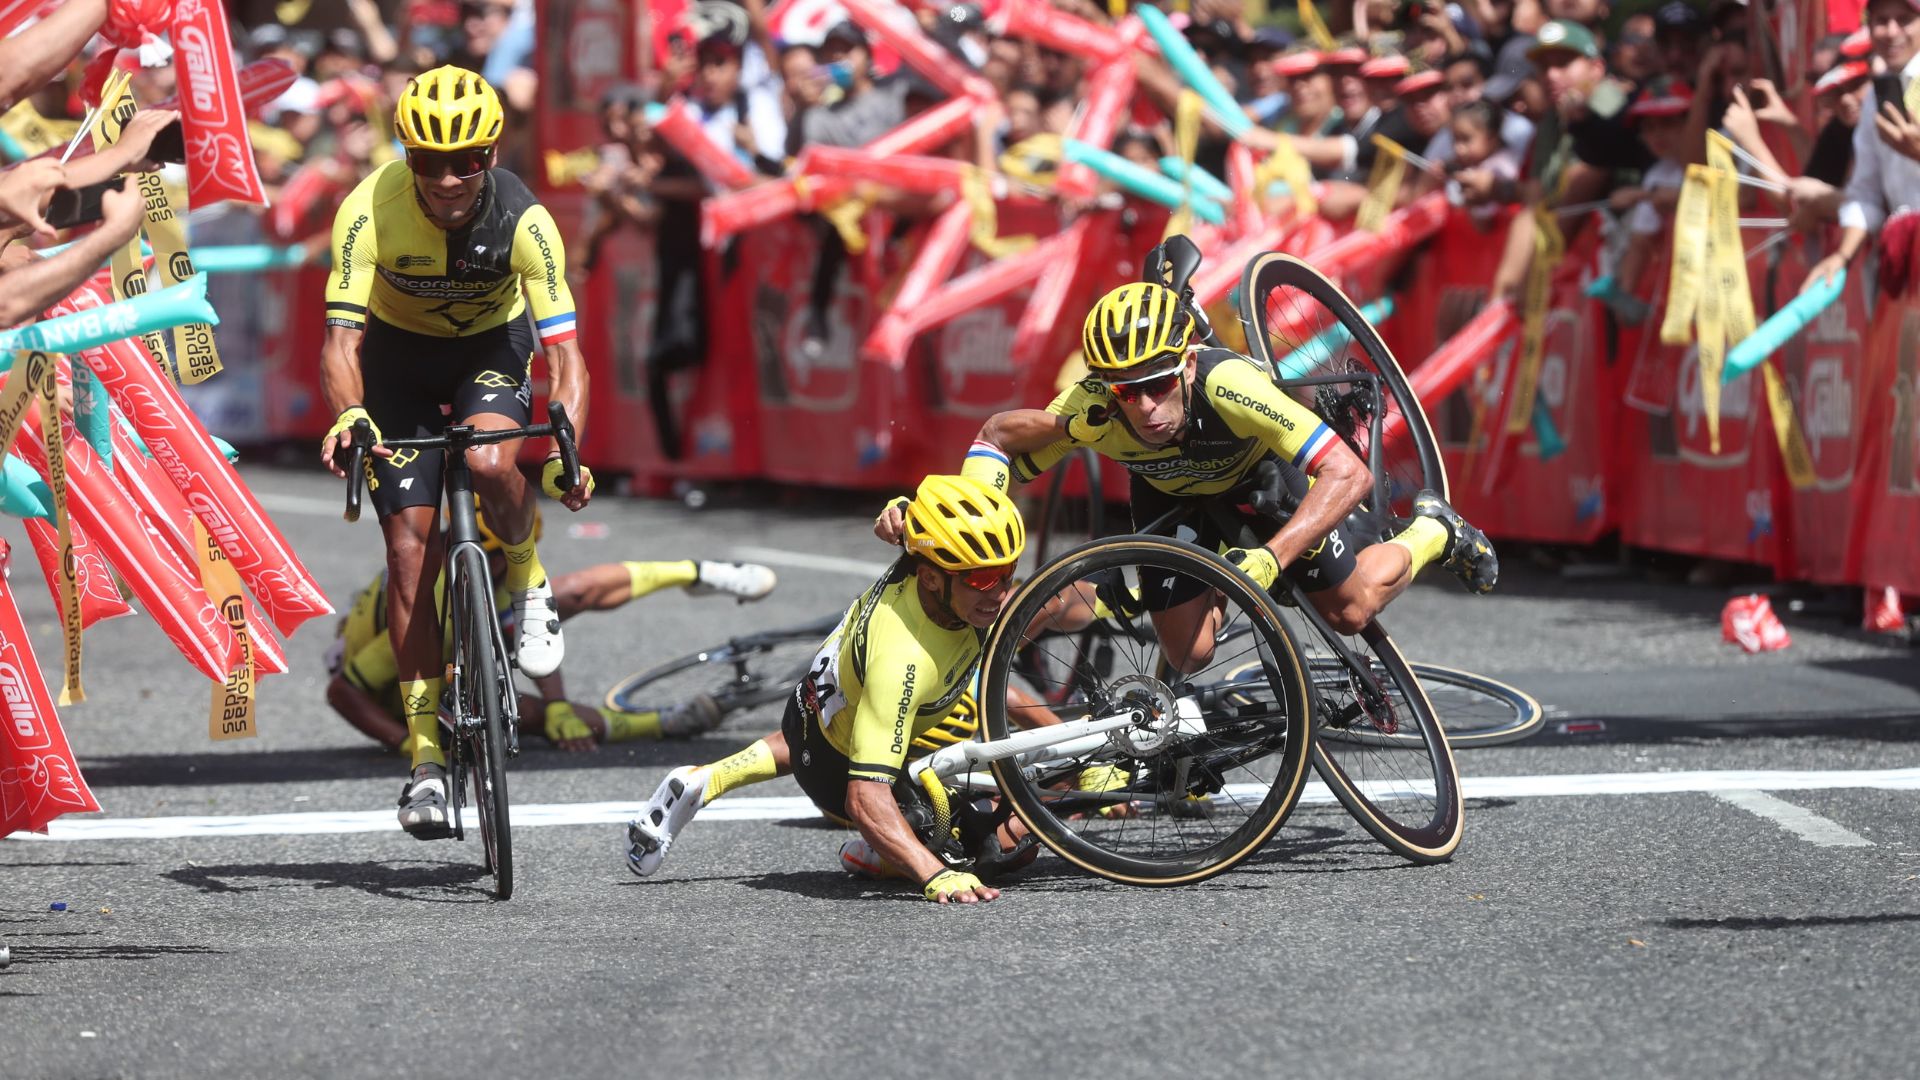 Manuel Rodas (lentes oscuros) al momento de caer junto a uno de sus compañeros cruzando la meta. (Foto Prensa Libre: Érick Ávila)